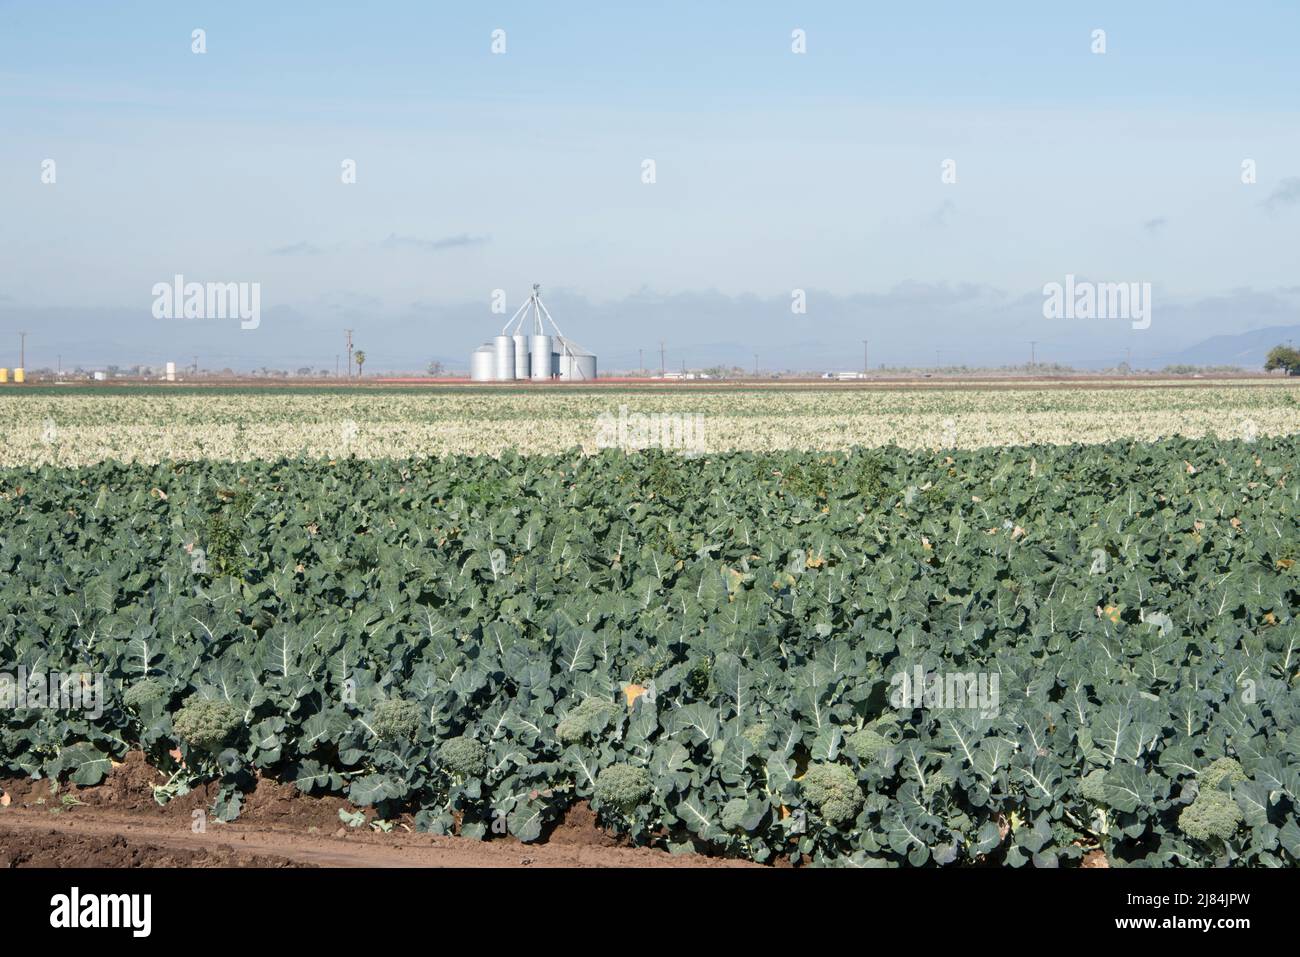 Les légumes mûrs sont prêts à être récoltés ou récoltés, Yuma, Arizona, États-Unis Banque D'Images